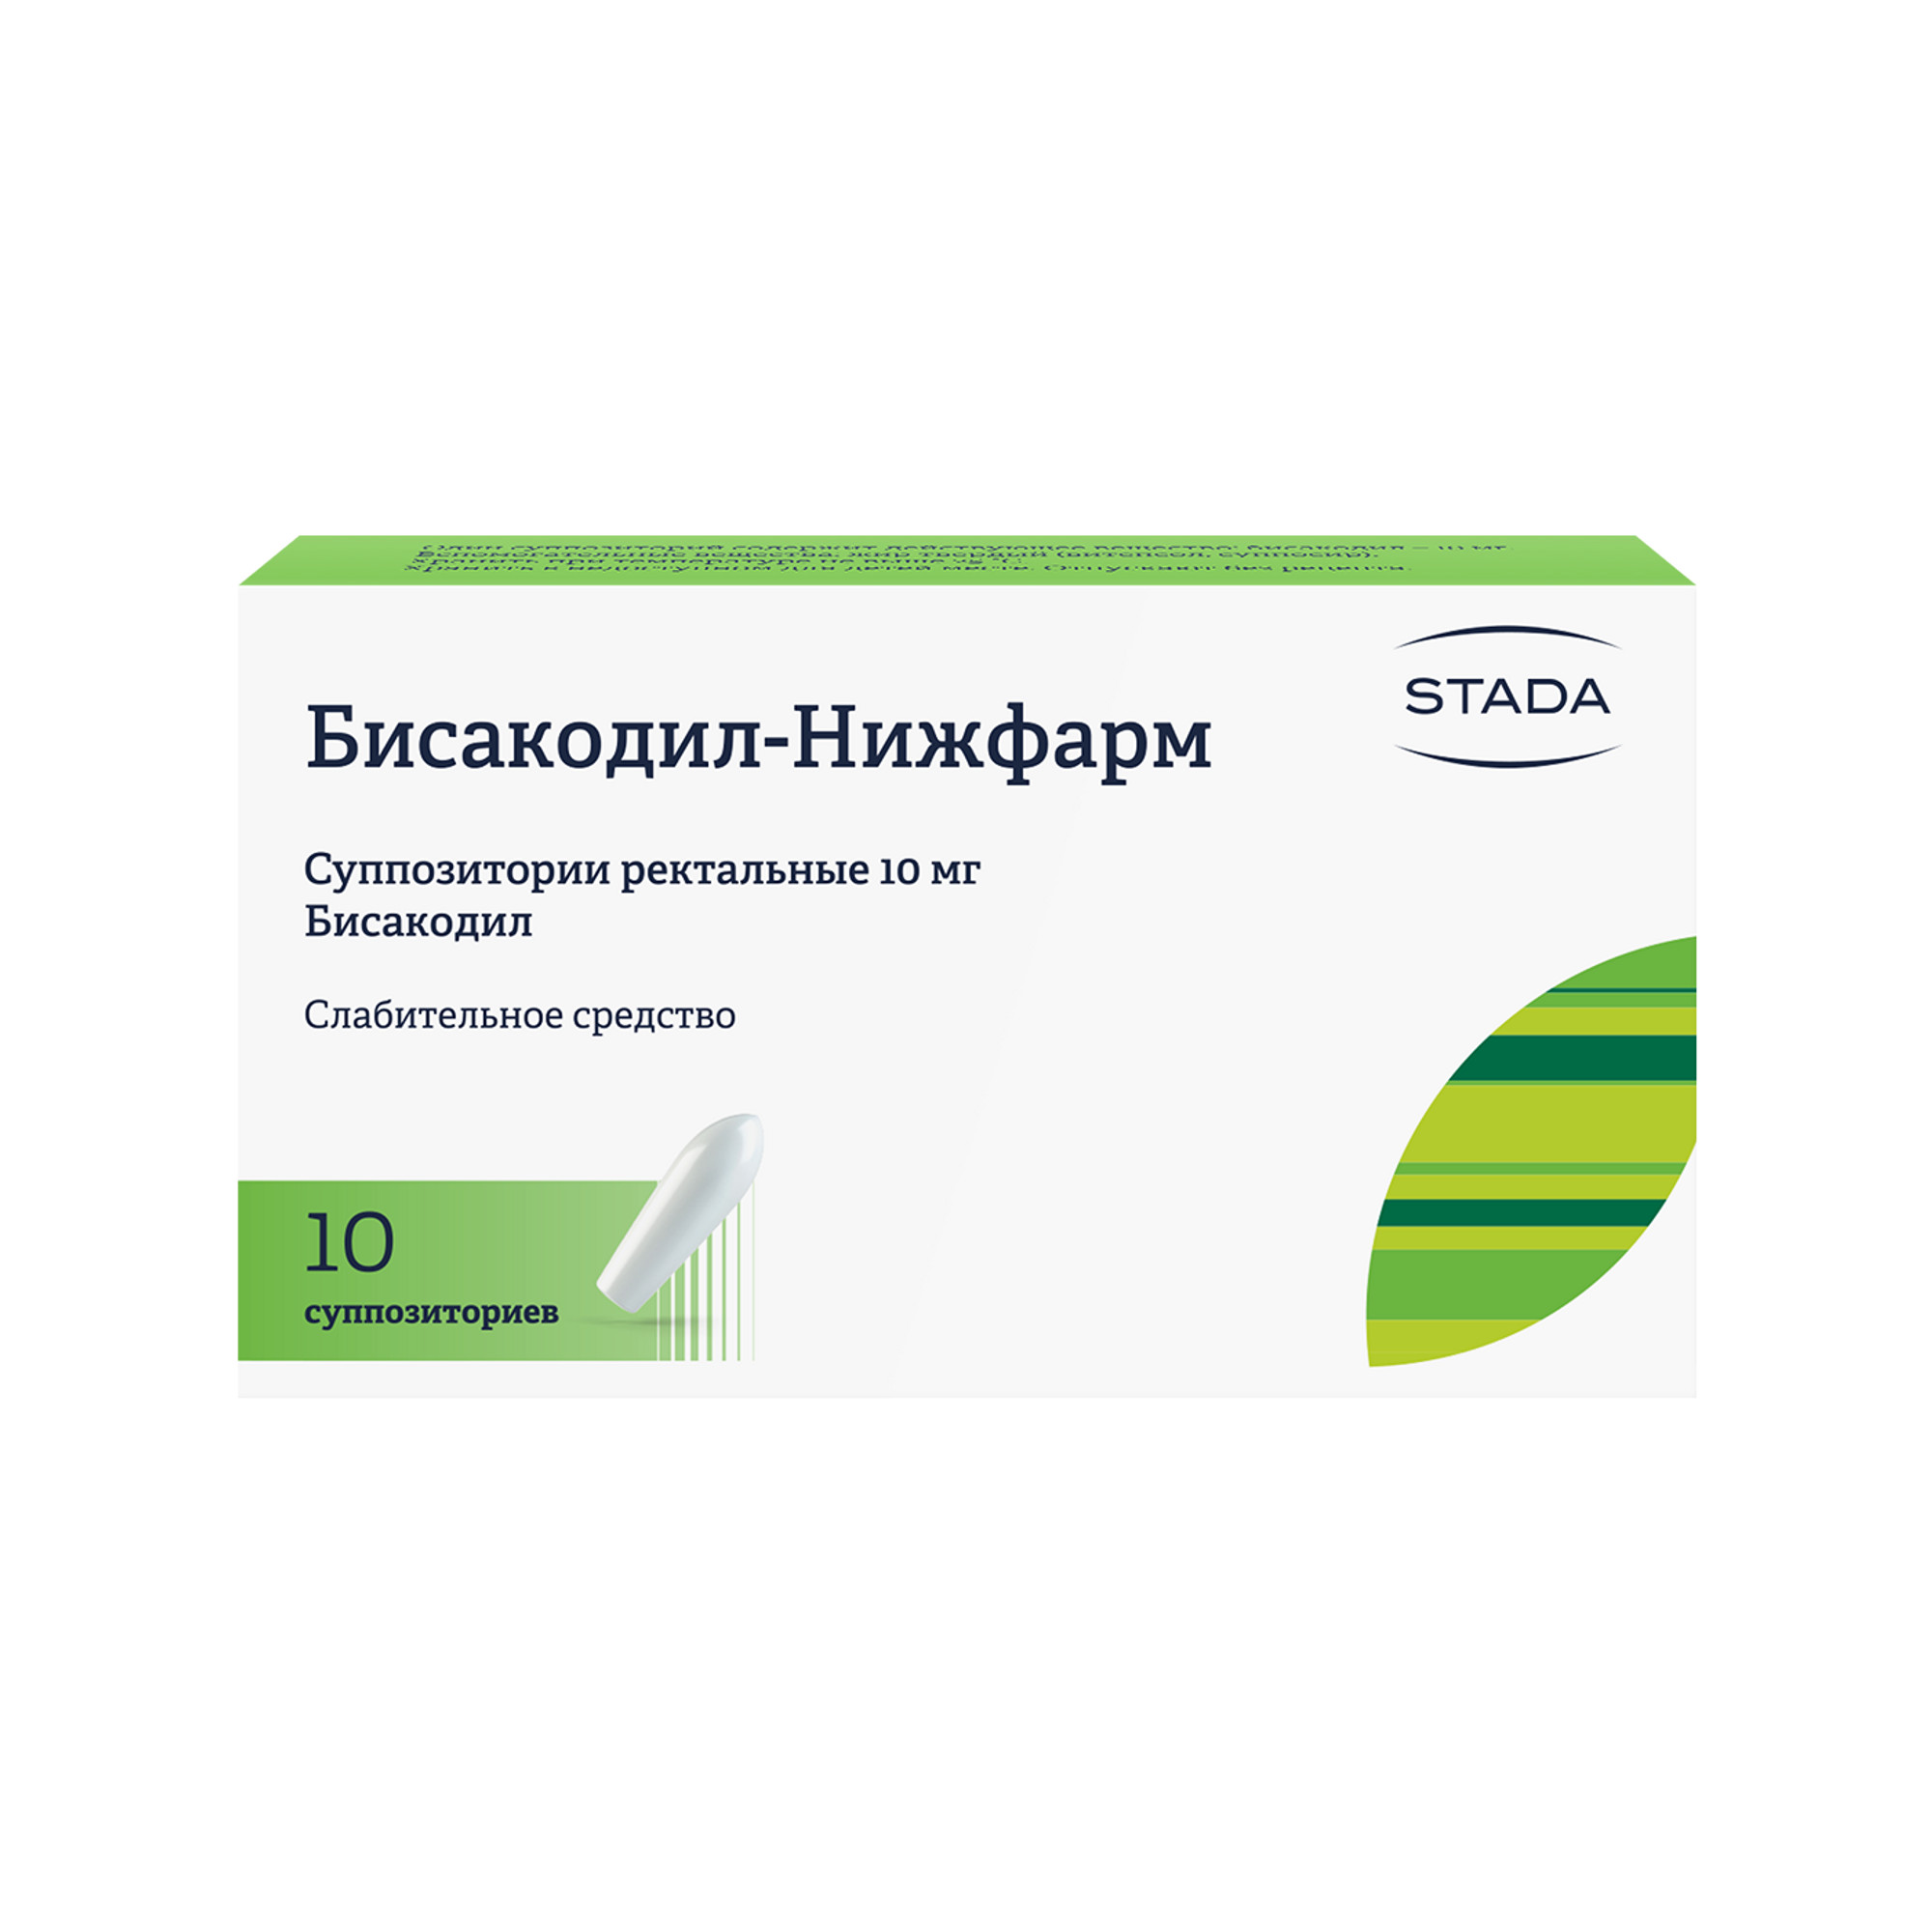 Бисакодил-Нижфарм, суппозитории ректальные 10 мг, 10 шт. бисакодил нижфарм суппозитории ректальные 10мг 10шт